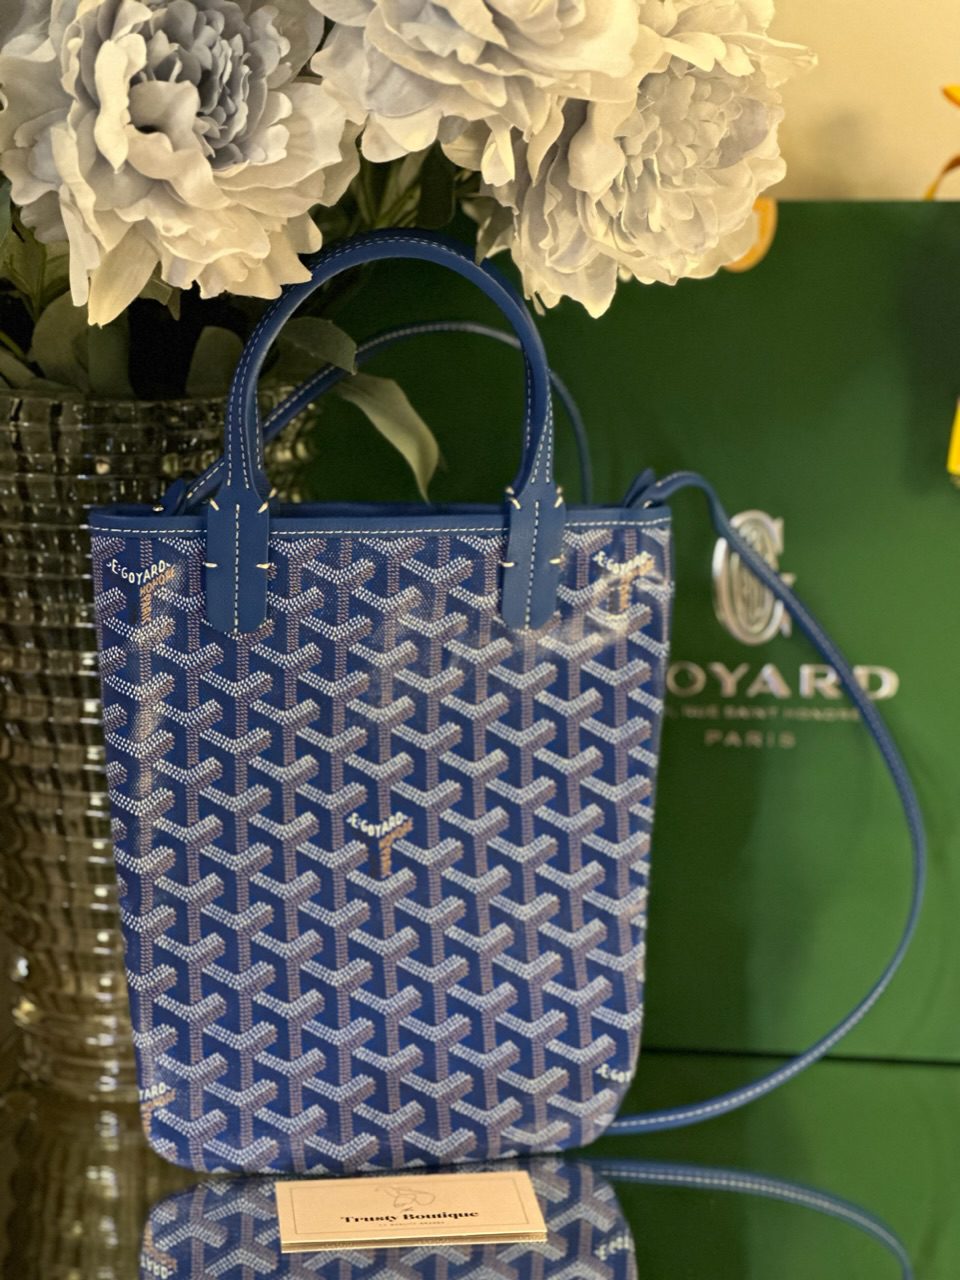 GOYARD Poitiers Claire Voie Shoulder Bag Strap Canvas Turquoise Blue Japan